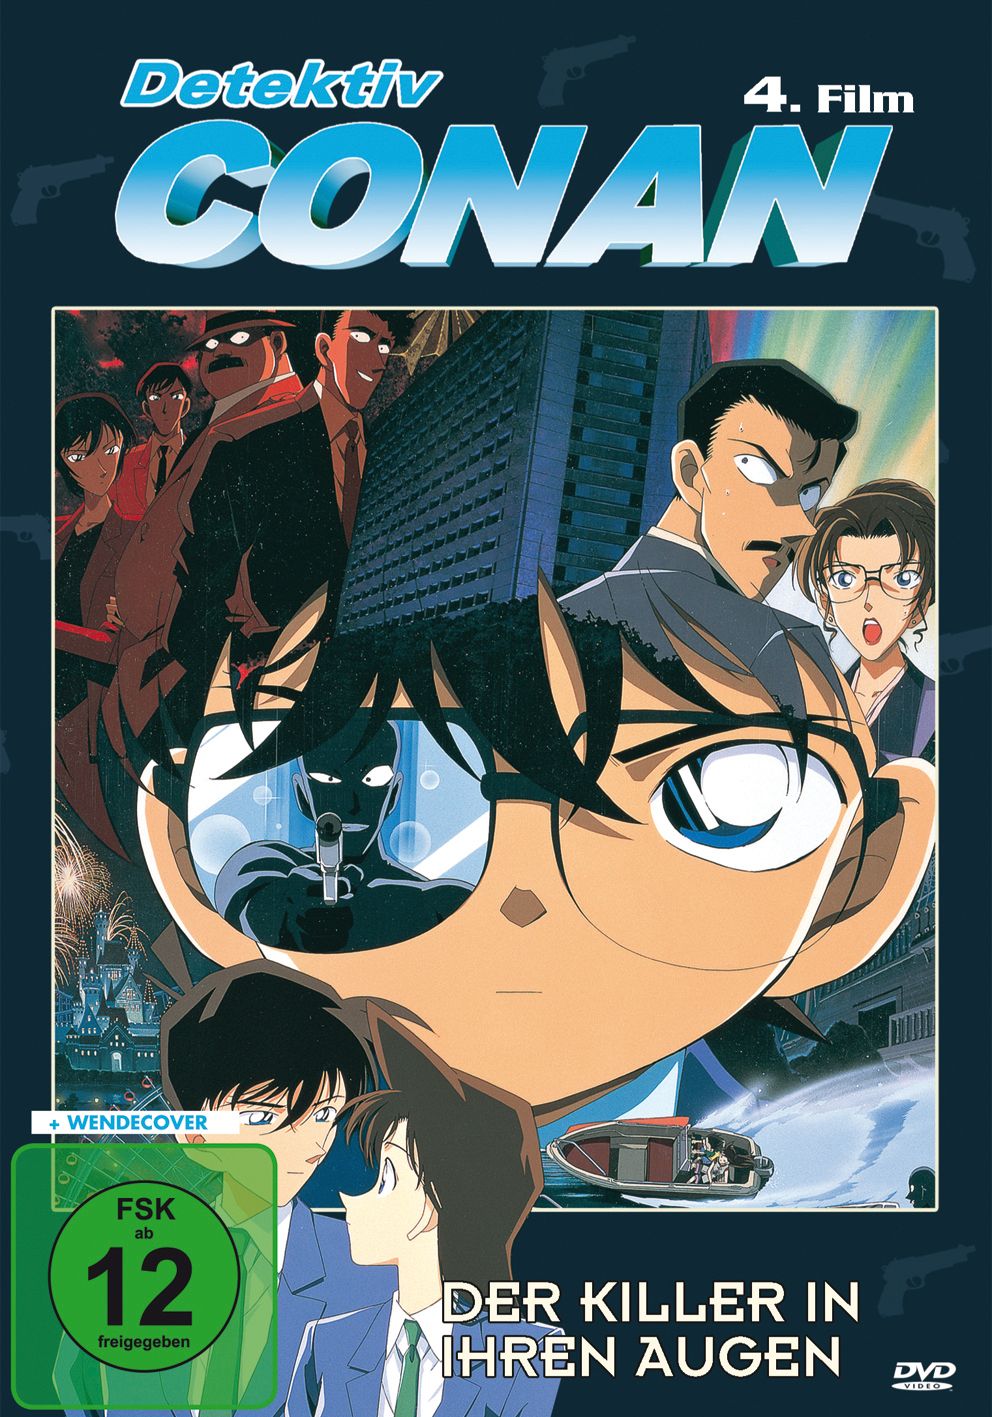 Bsto Detektiv Conan